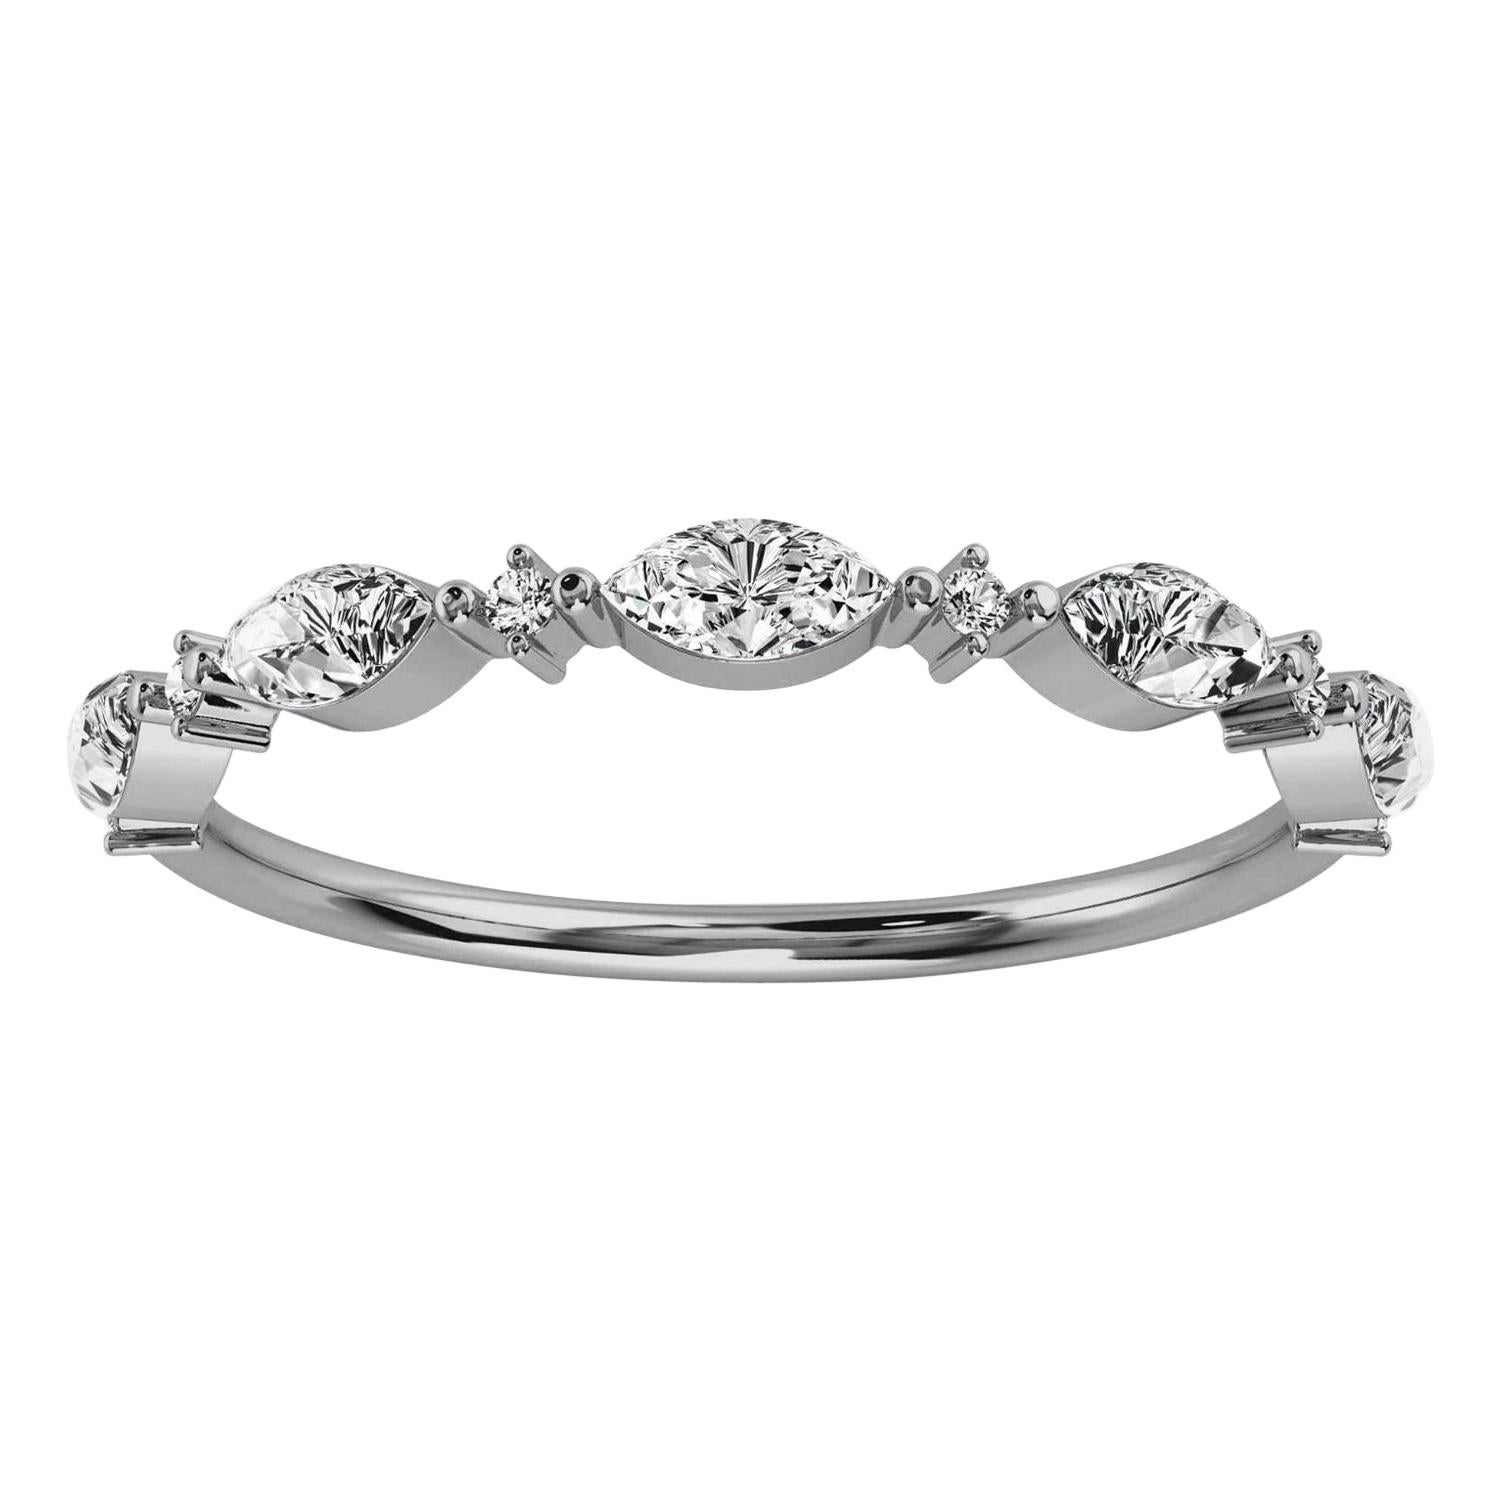 Platinum Petite Marquise Organic Design Diamond Ring '1/4 Ct. Tw' For Sale